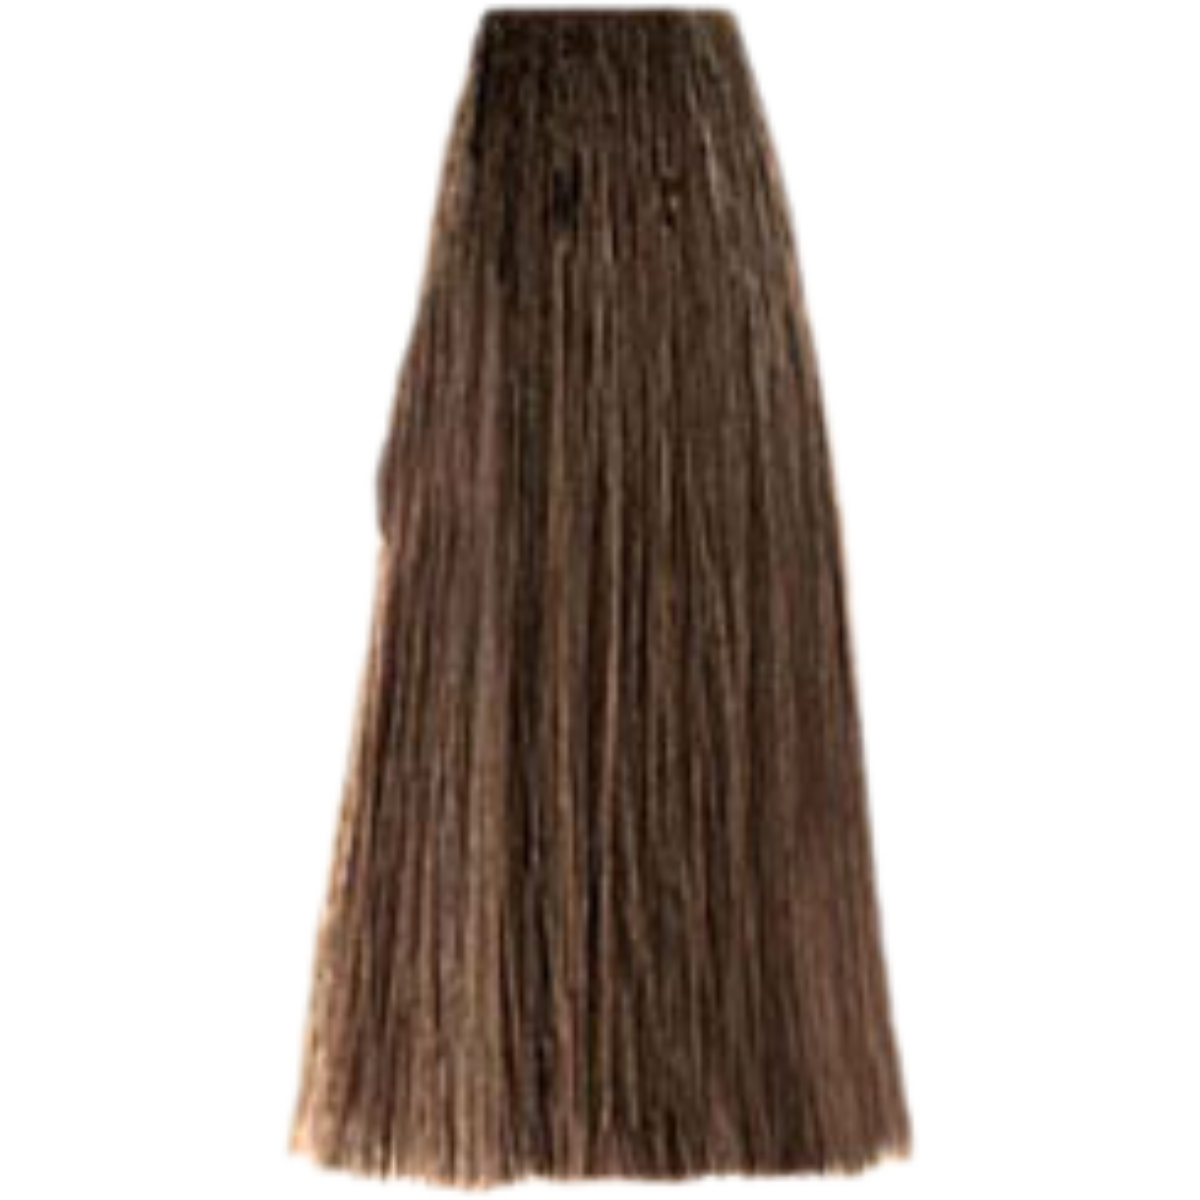 צבע שיער 6.13 DARK BEIGE BLONDE פארמויטה FarmaVita צבע לשיער 100 גרם